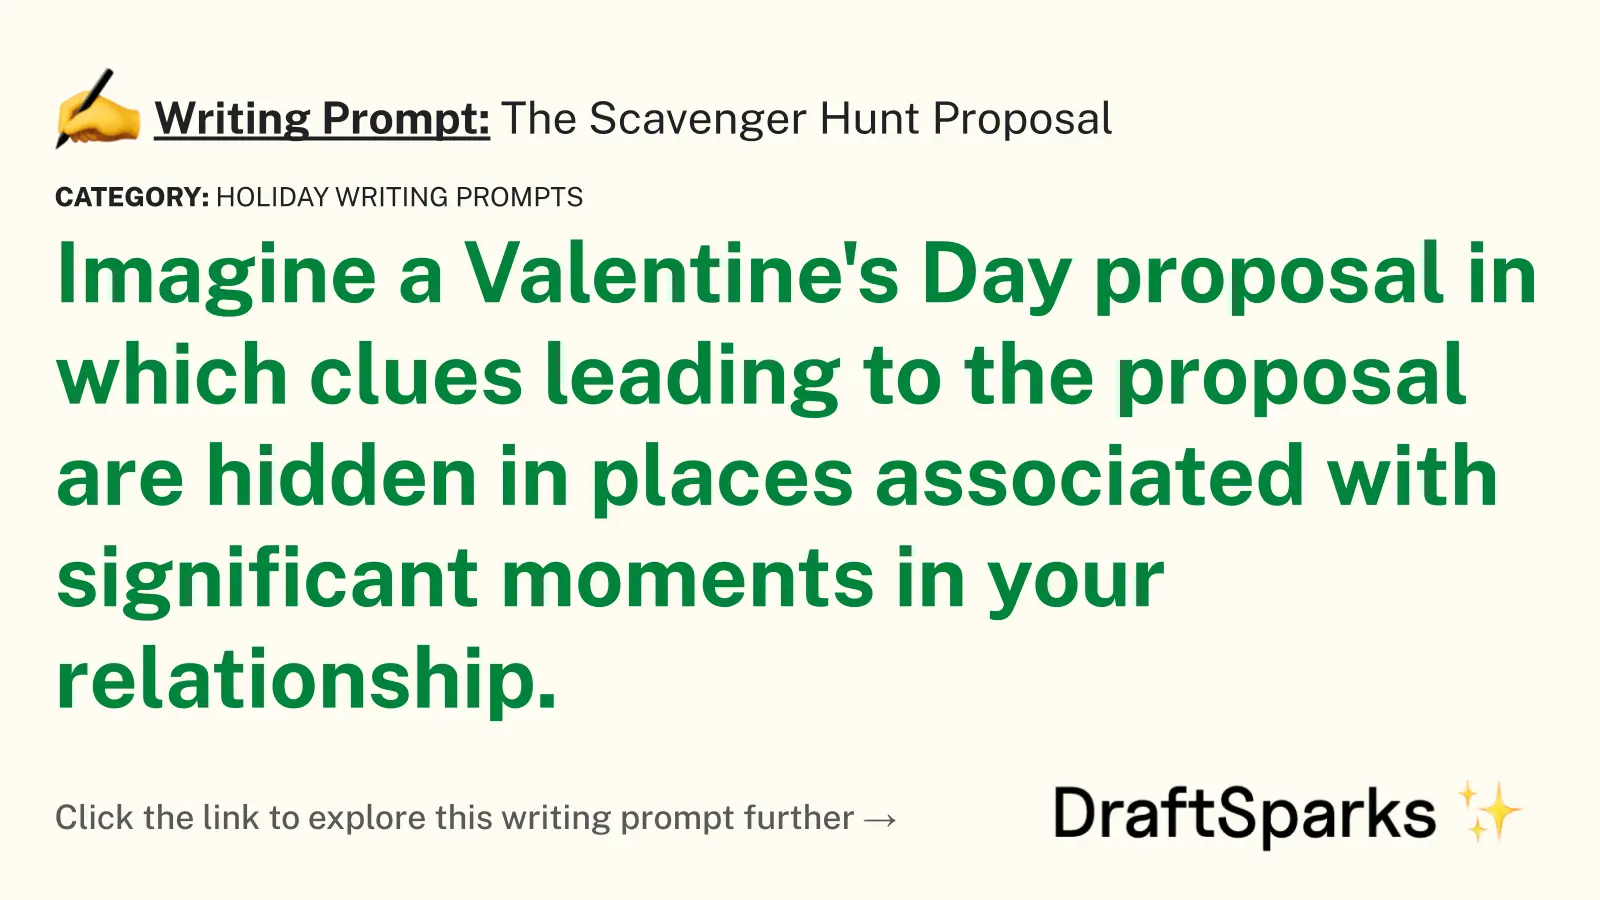 The Scavenger Hunt Proposal